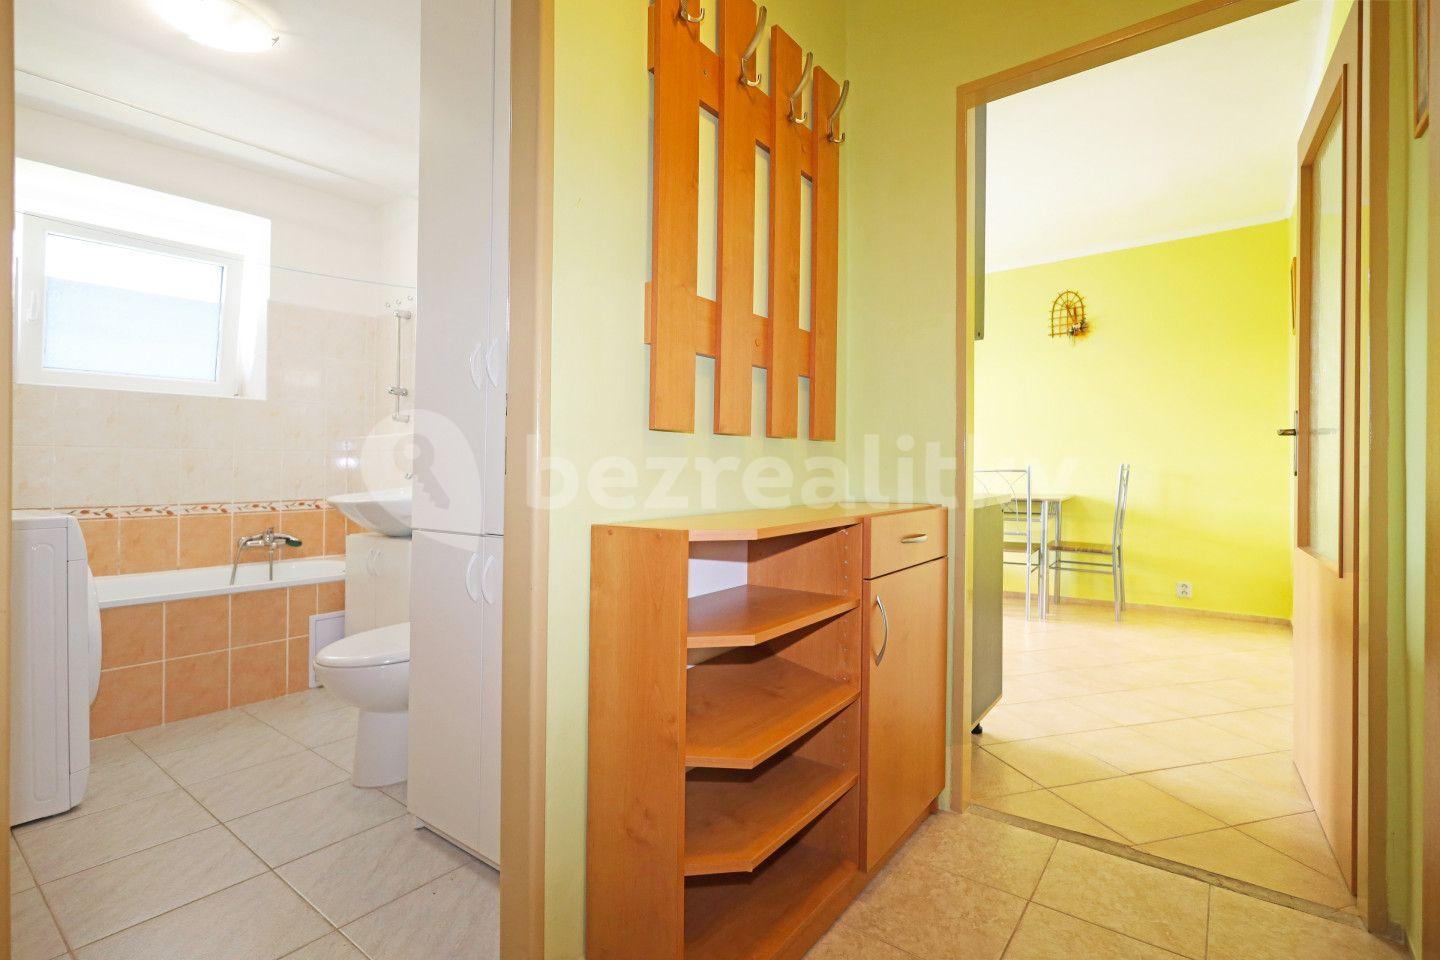 2 bedroom flat for sale, 47 m², Zahradní, Horní Slavkov, Karlovarský Region